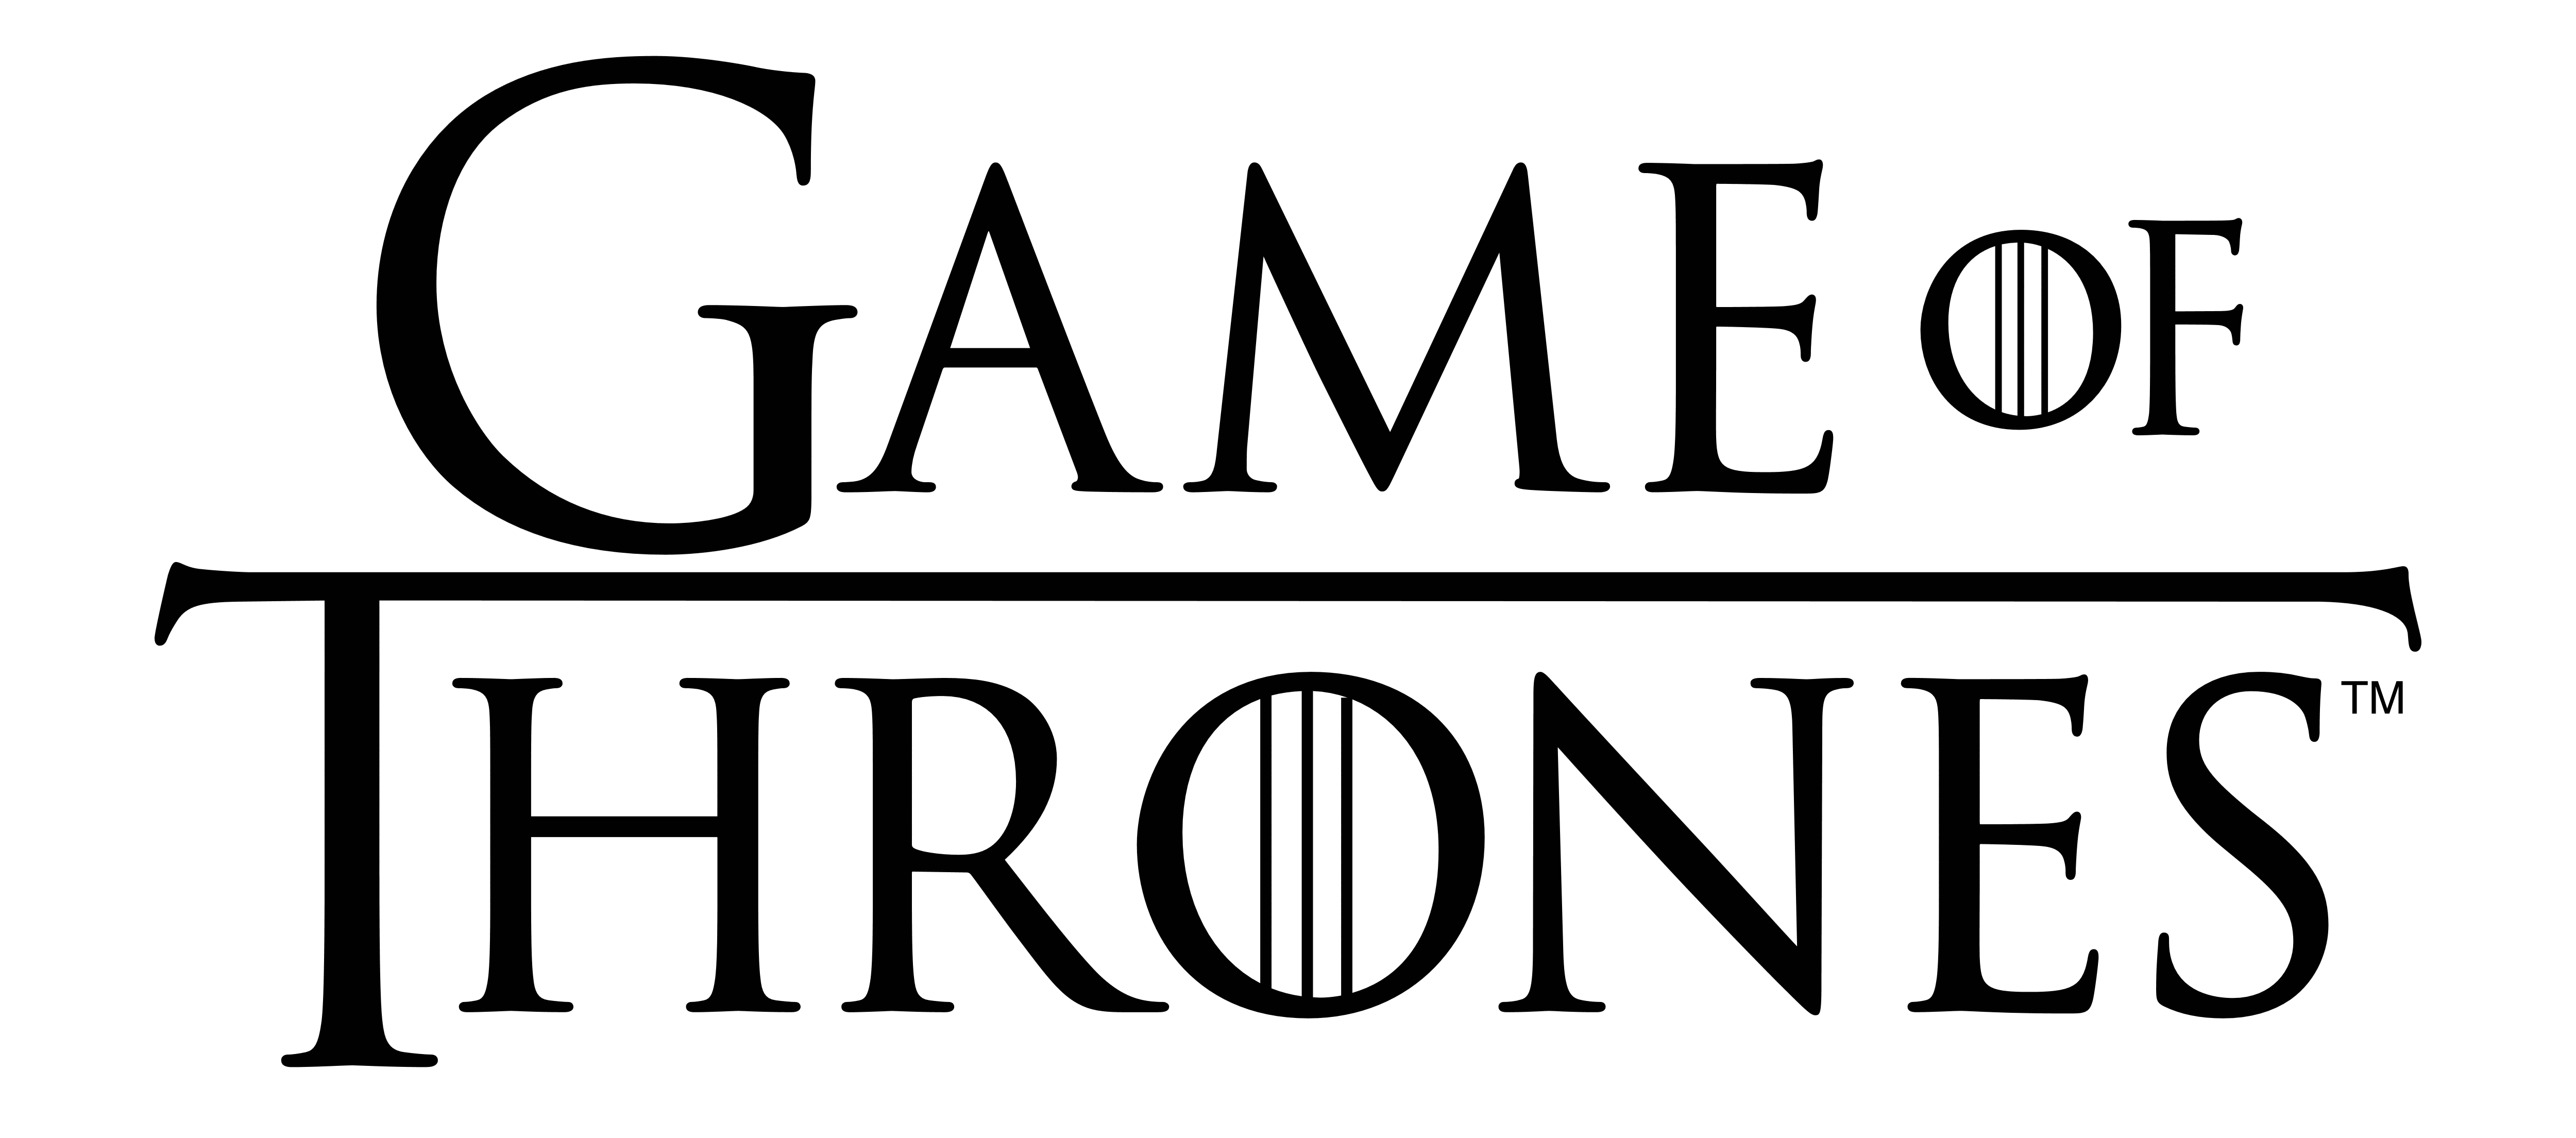 Got Logo - Game of Thrones – Logos Download